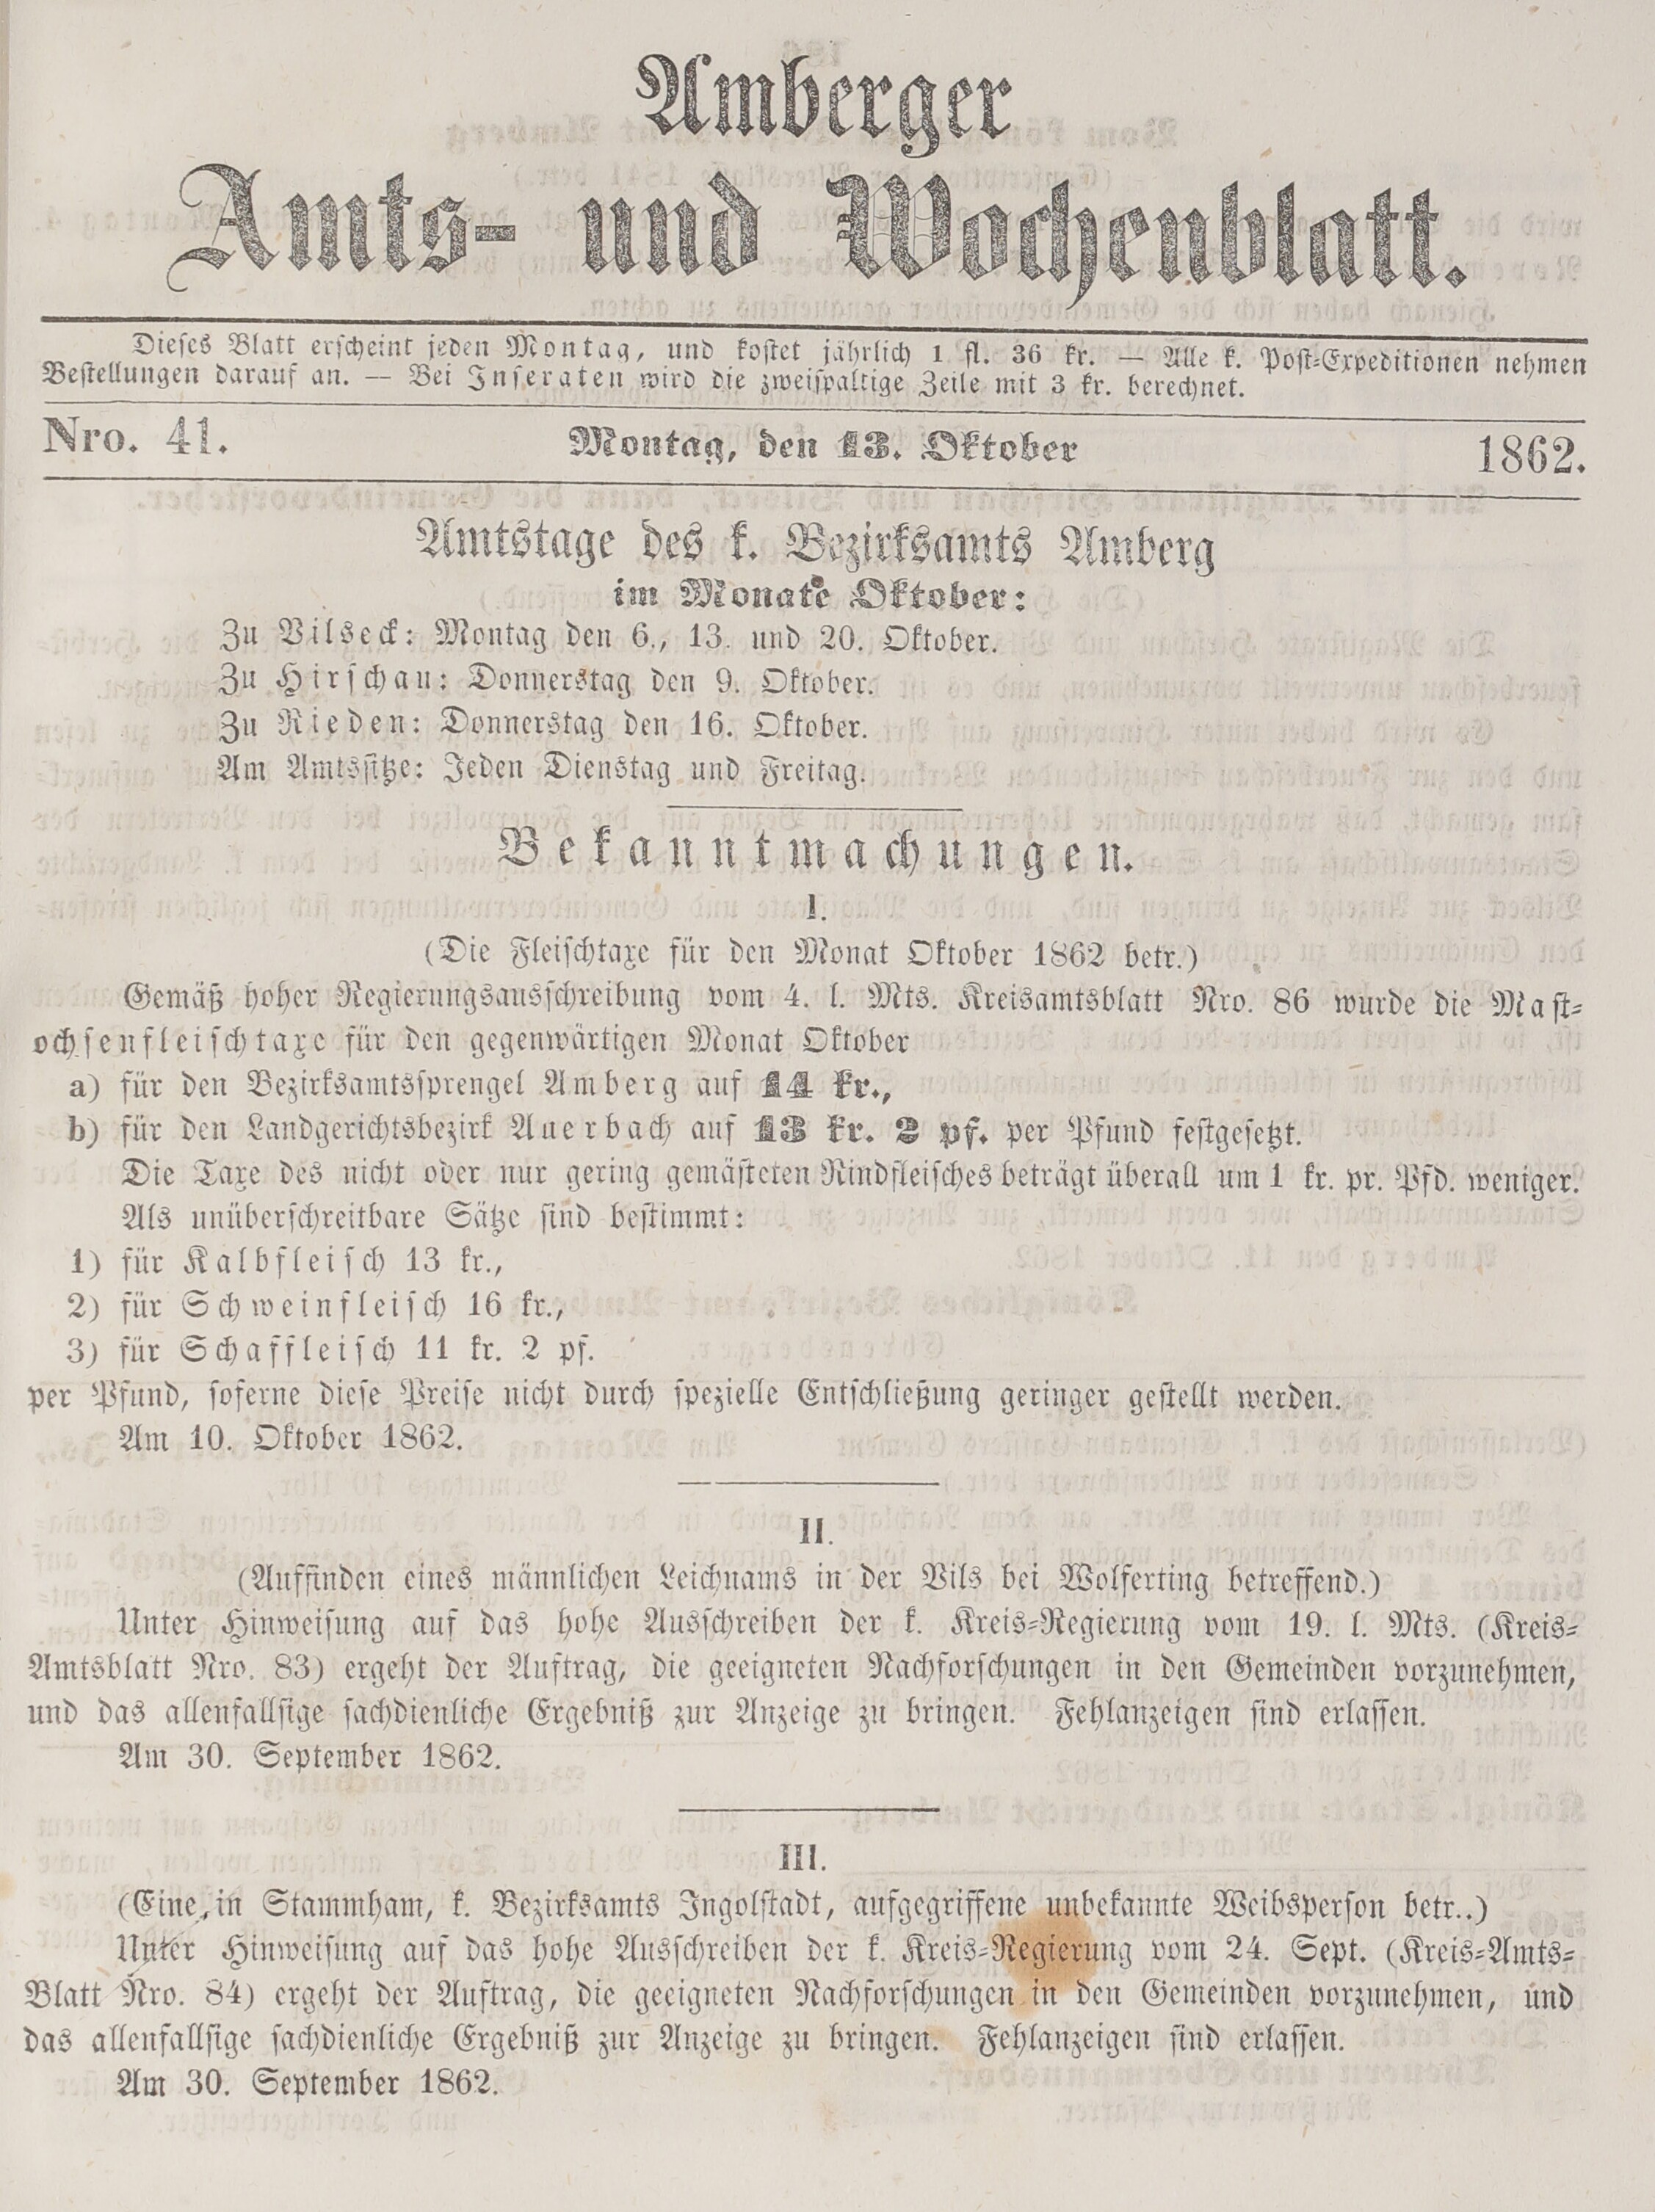 1. amberger-wochenblatt-1862-10-13-n41_1830